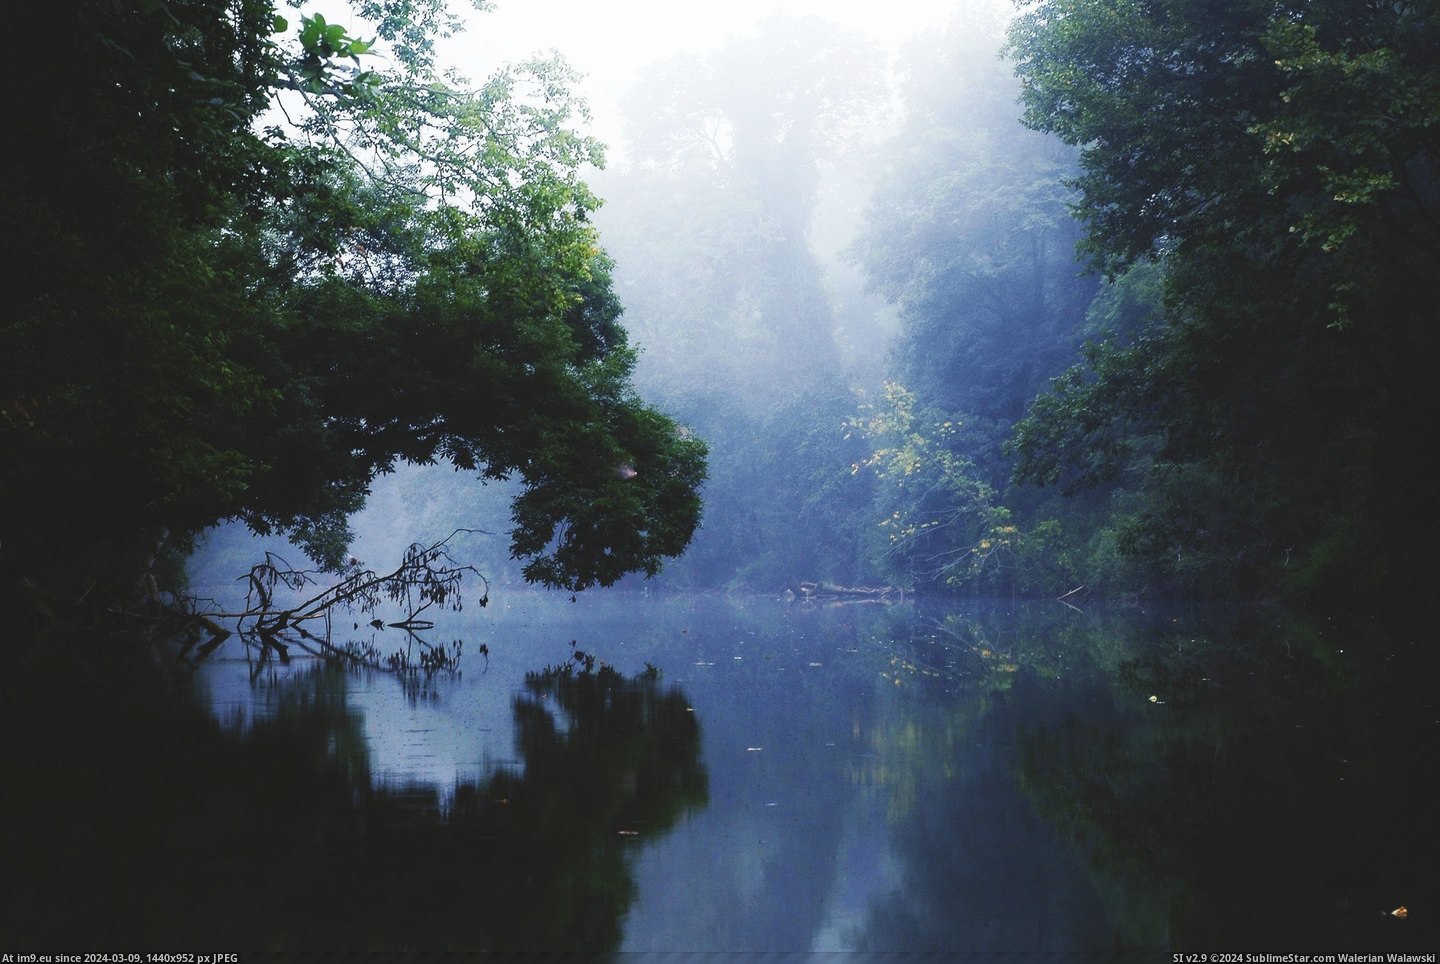 #Morning #Creek #3008x2000 #Goose #Fog #Virginia [Earthporn] Morning Fog on Goose Creek, Virginia [3008x2000] Pic. (Bild von album My r/EARTHPORN favs))